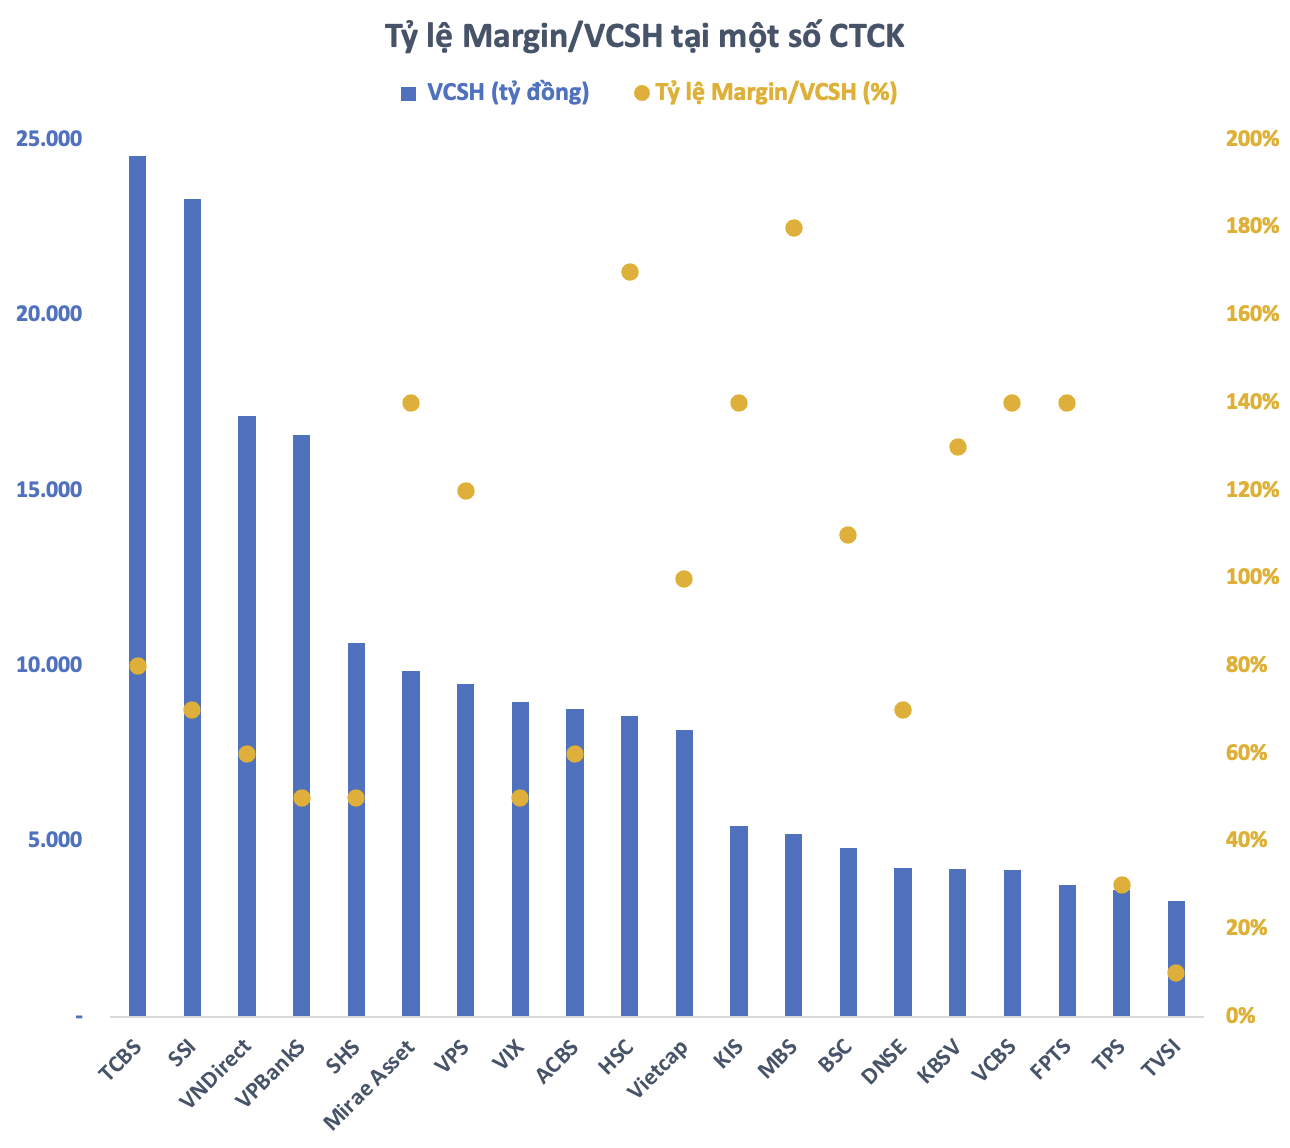 Nguồn: Tổng hợp số liệu dư nợ margin từ các CTCK